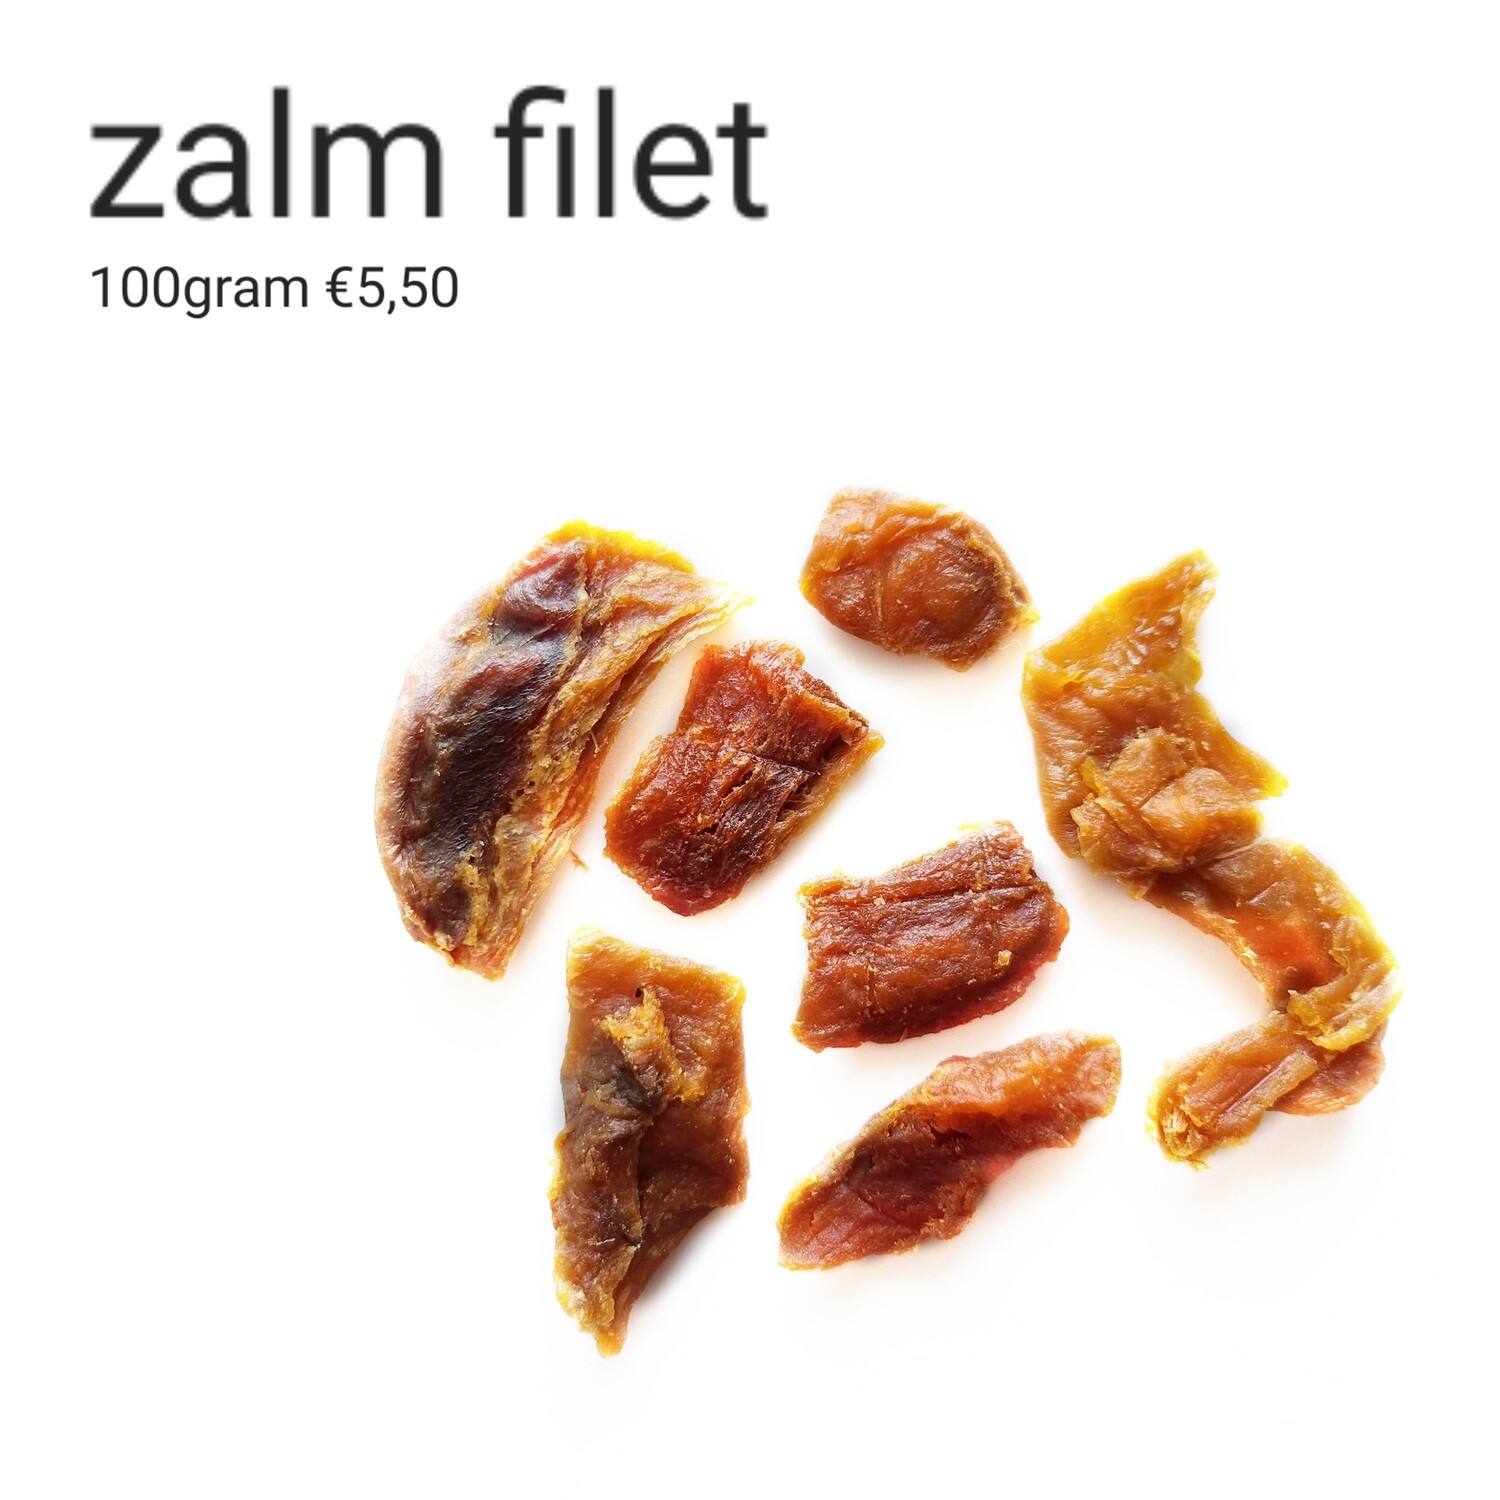 Zalm filet